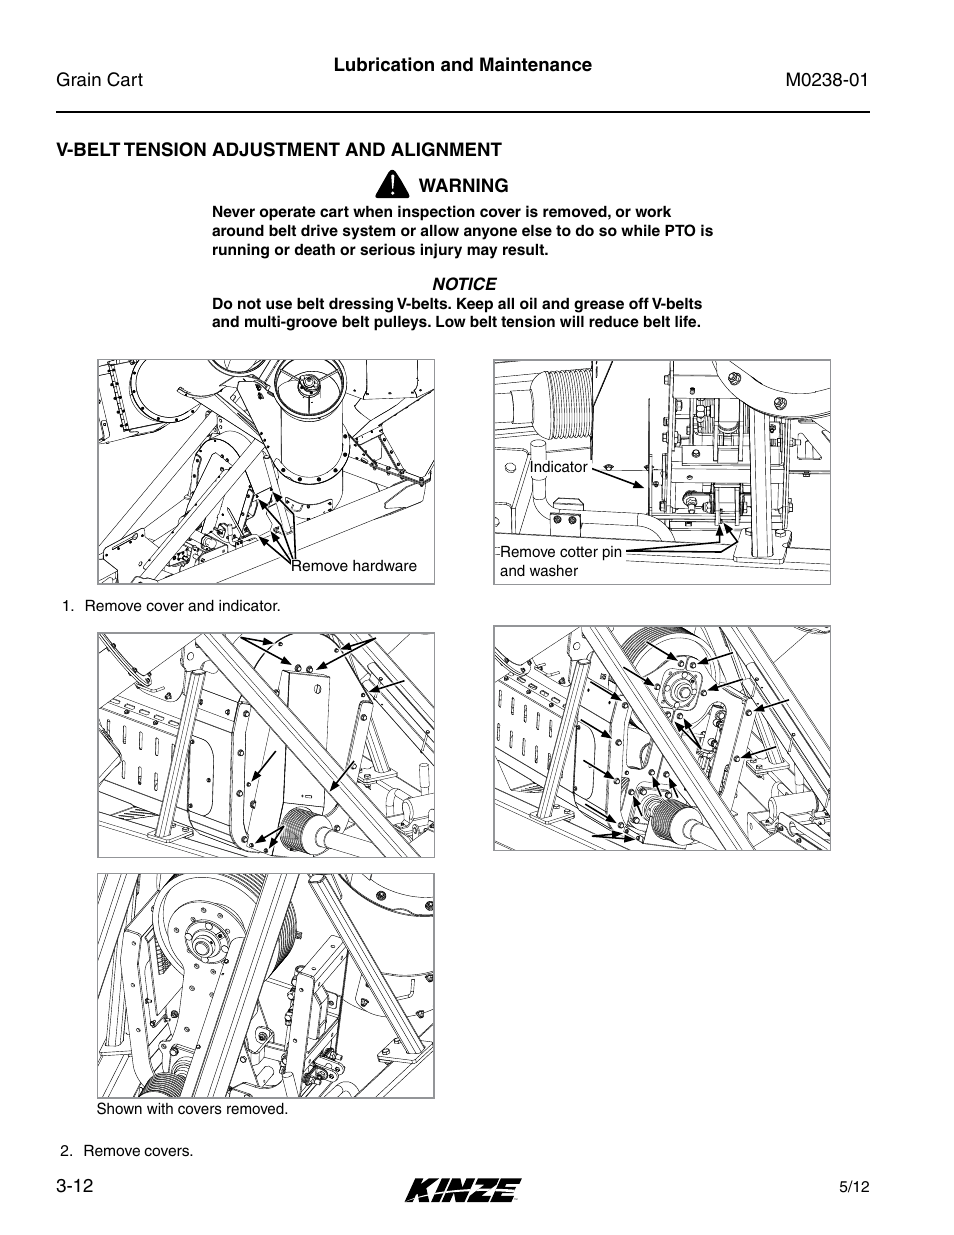 V-belt tension adjustment and alignment, V-belt tension adjustment and alignment -12 | Kinze Grain Carts Rev. 7/14 User Manual | Page 48 / 70